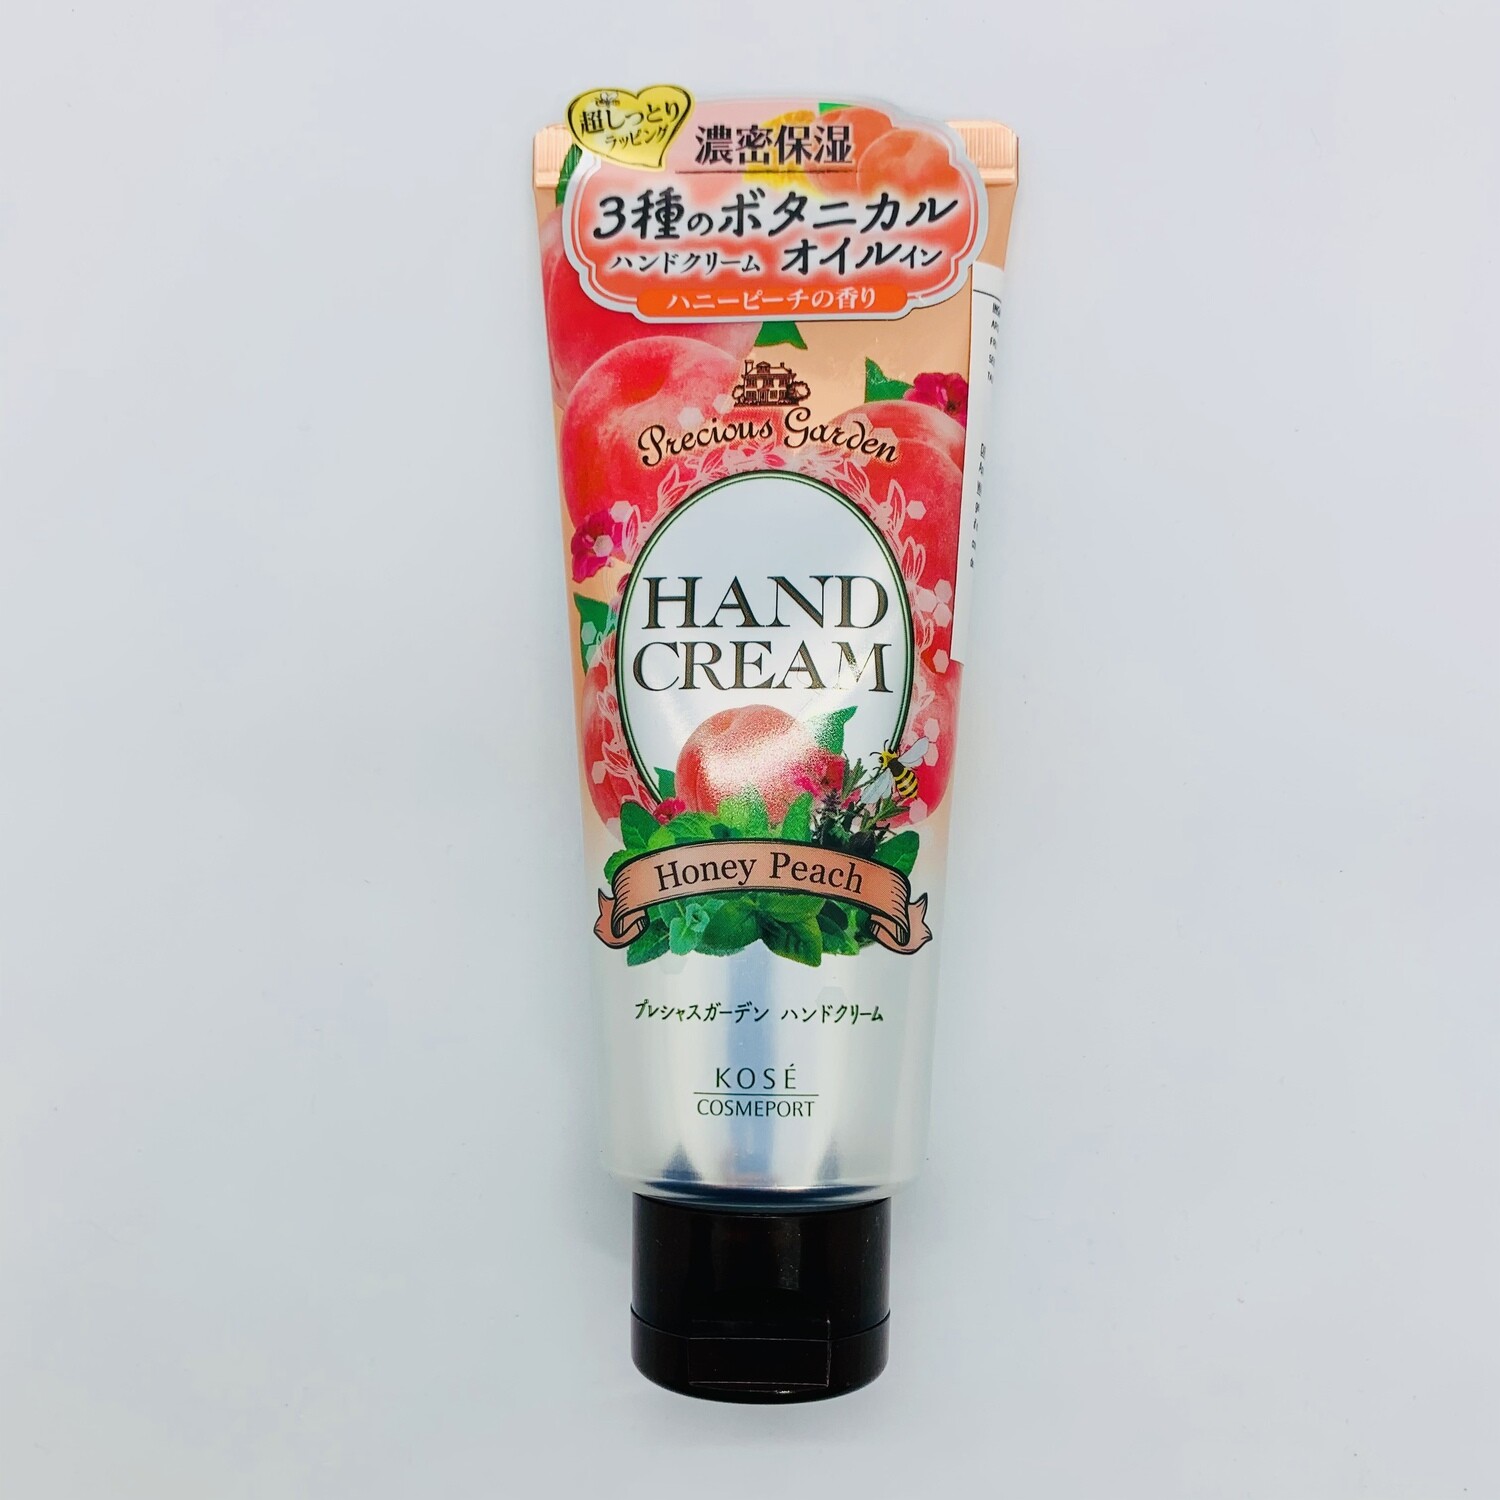 KOSE Hand Cream Honey Peach